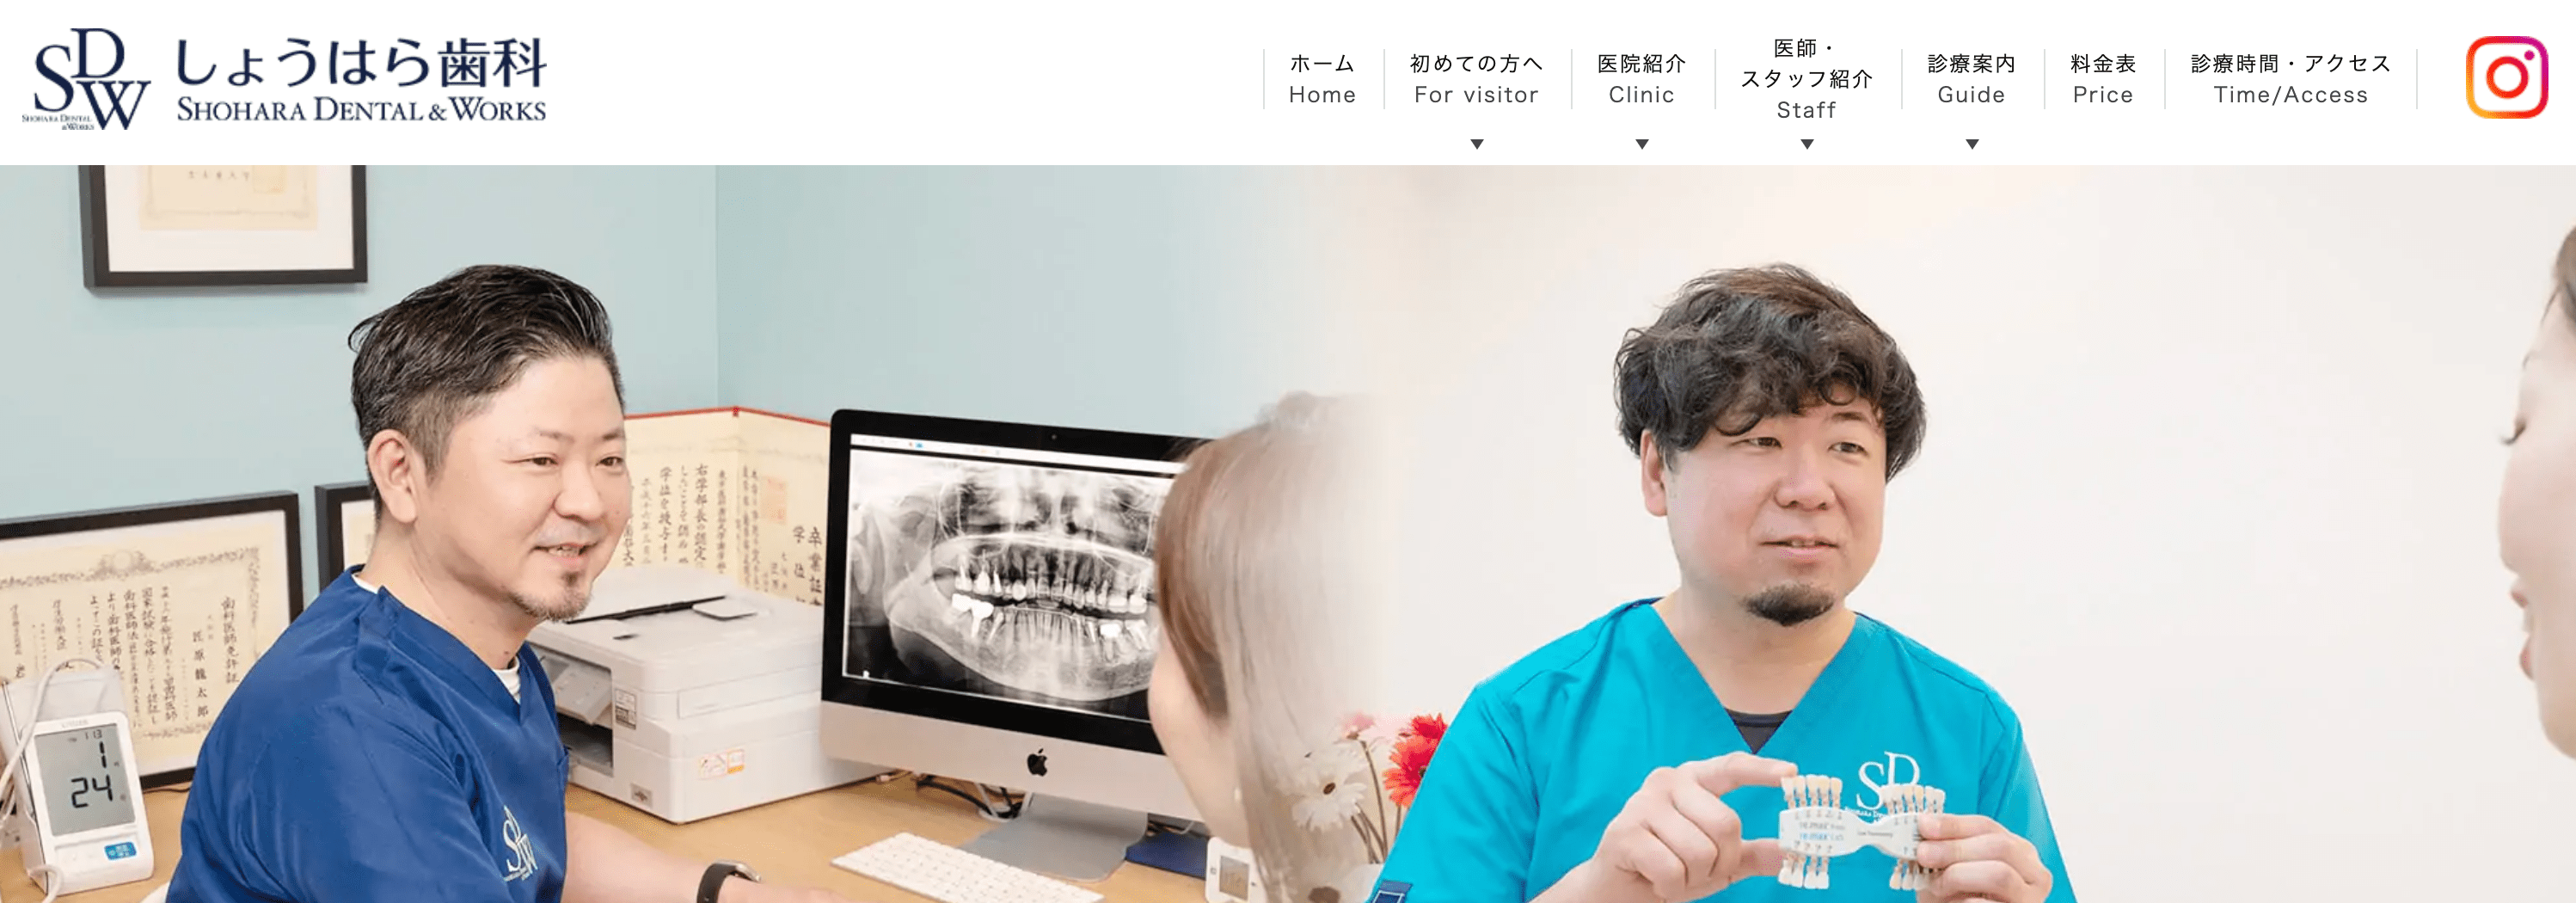 大阪市で評判のセラミック治療におすすめの歯科クリニック10選 しょうはら歯科